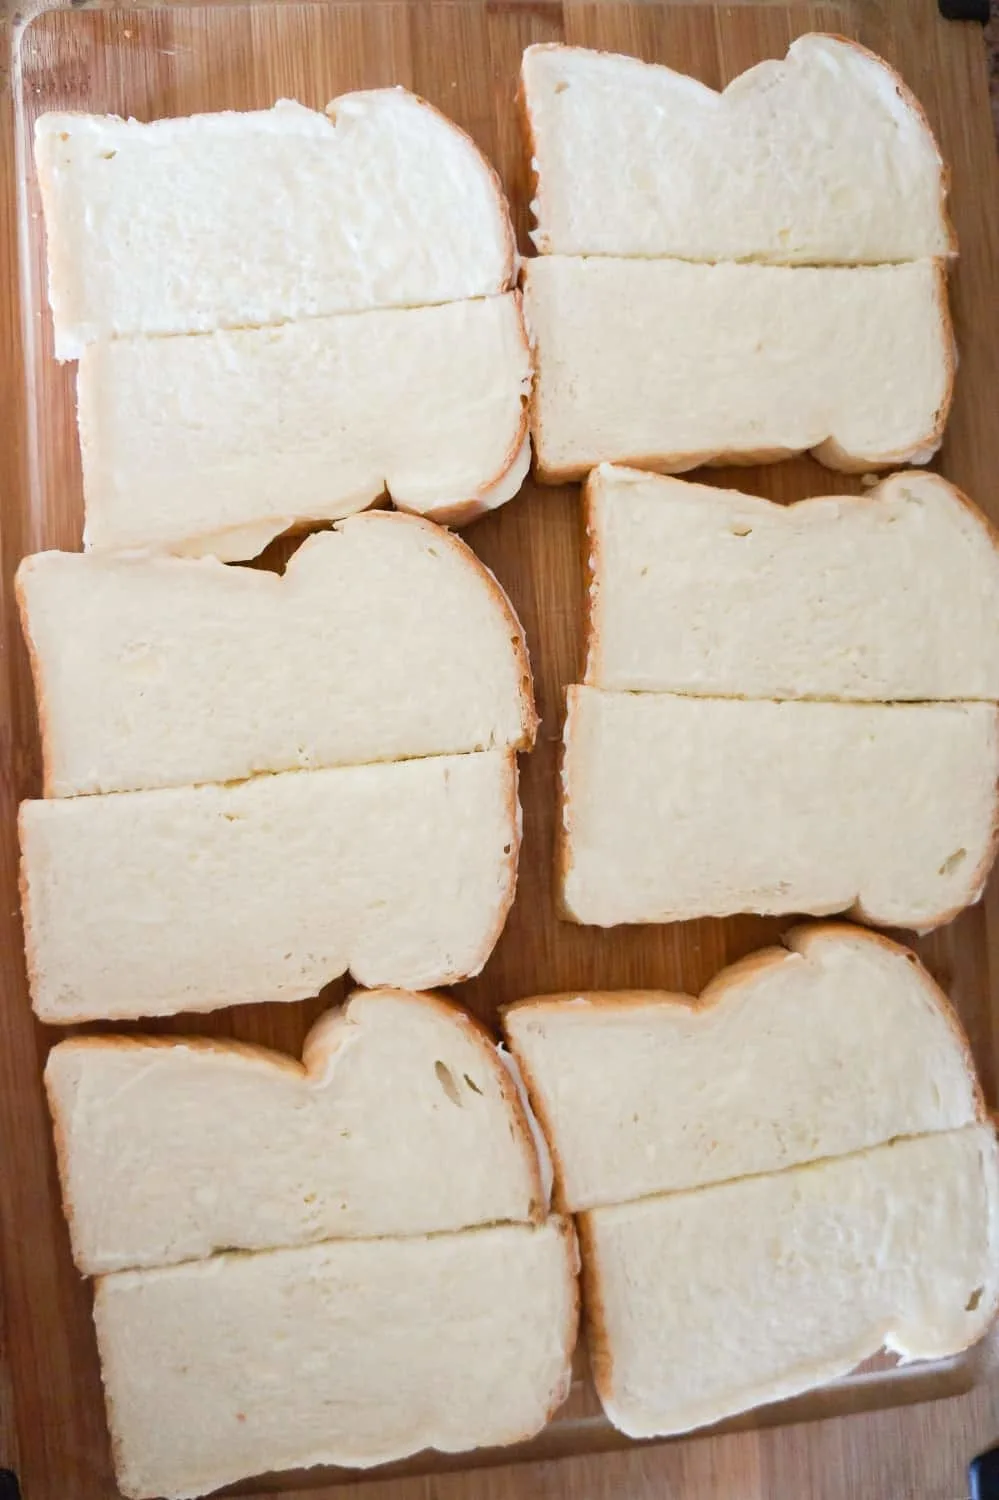 bread slices on a cutting board cut in half